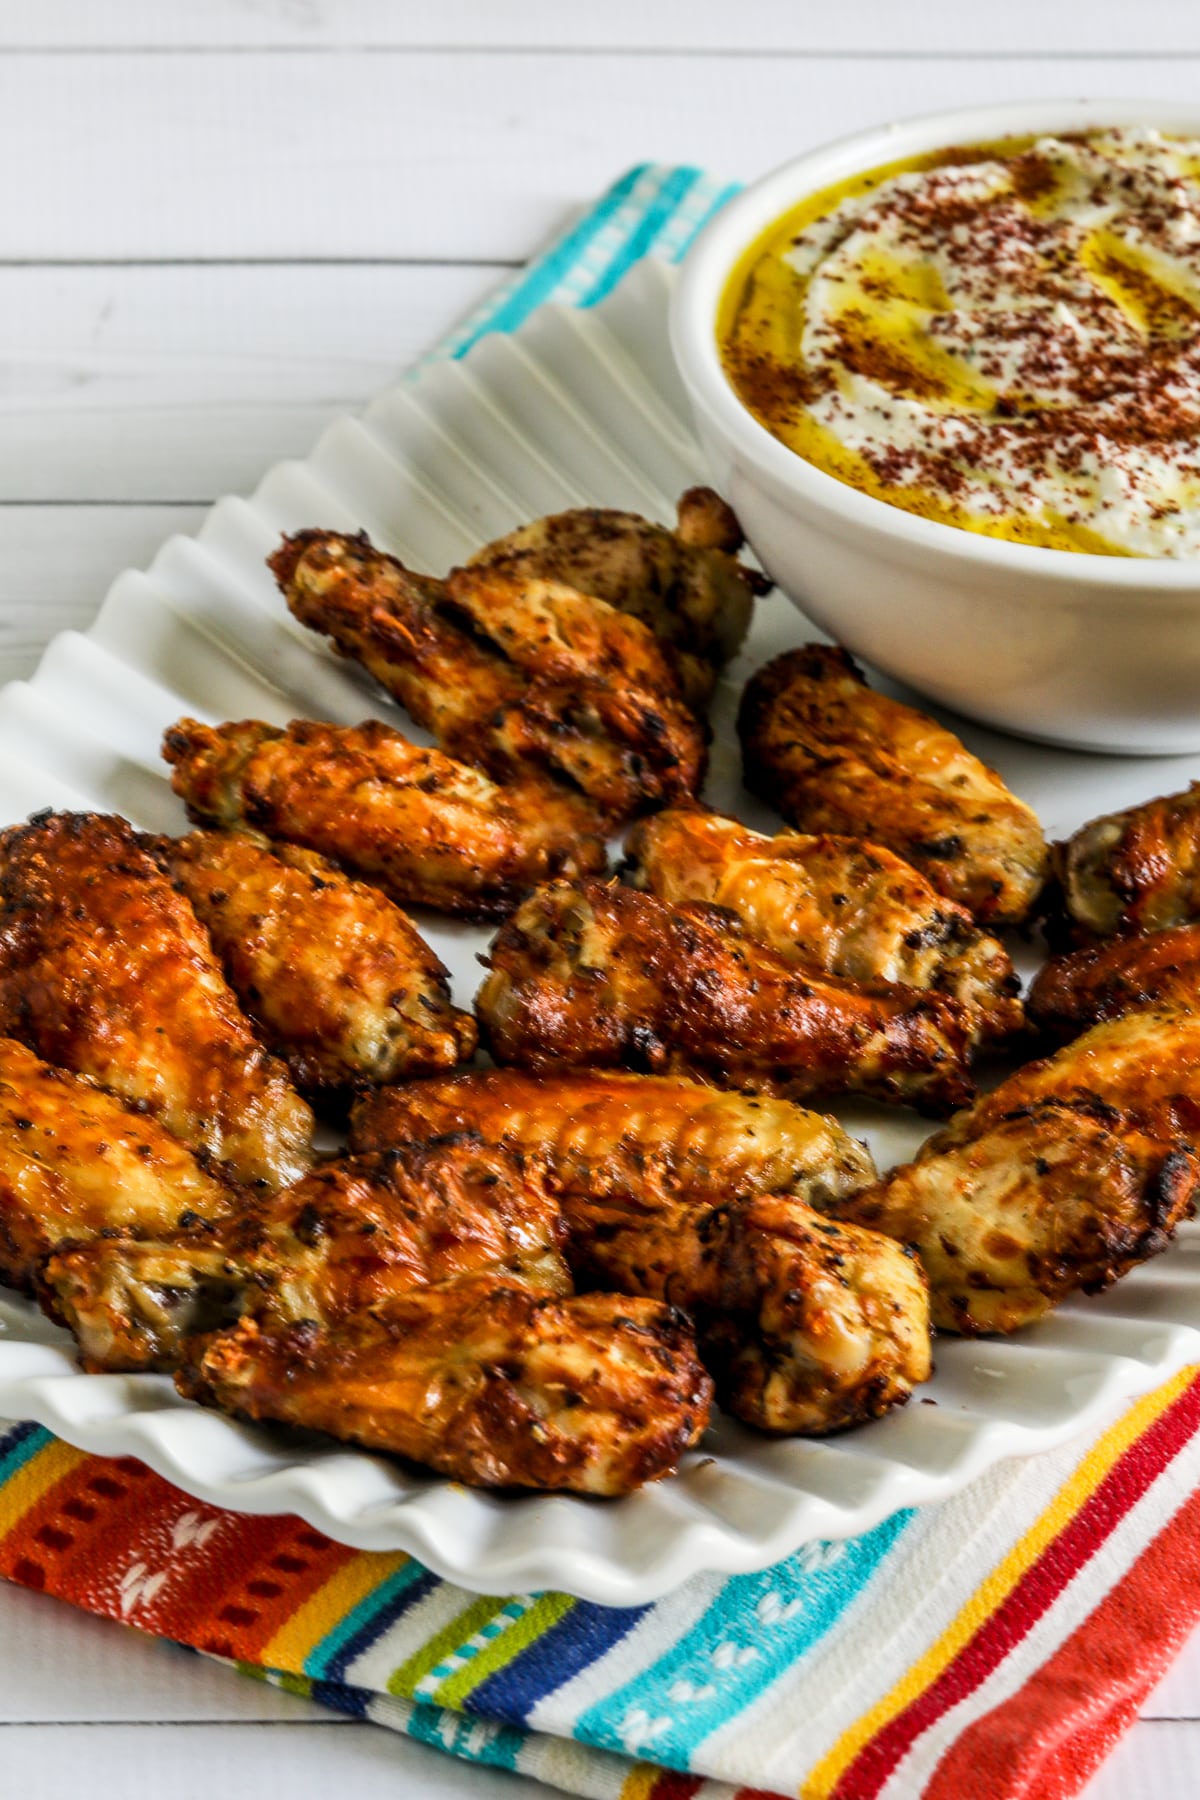 Greek Air Fryer Chicken Wings on serving platter with Feta dip